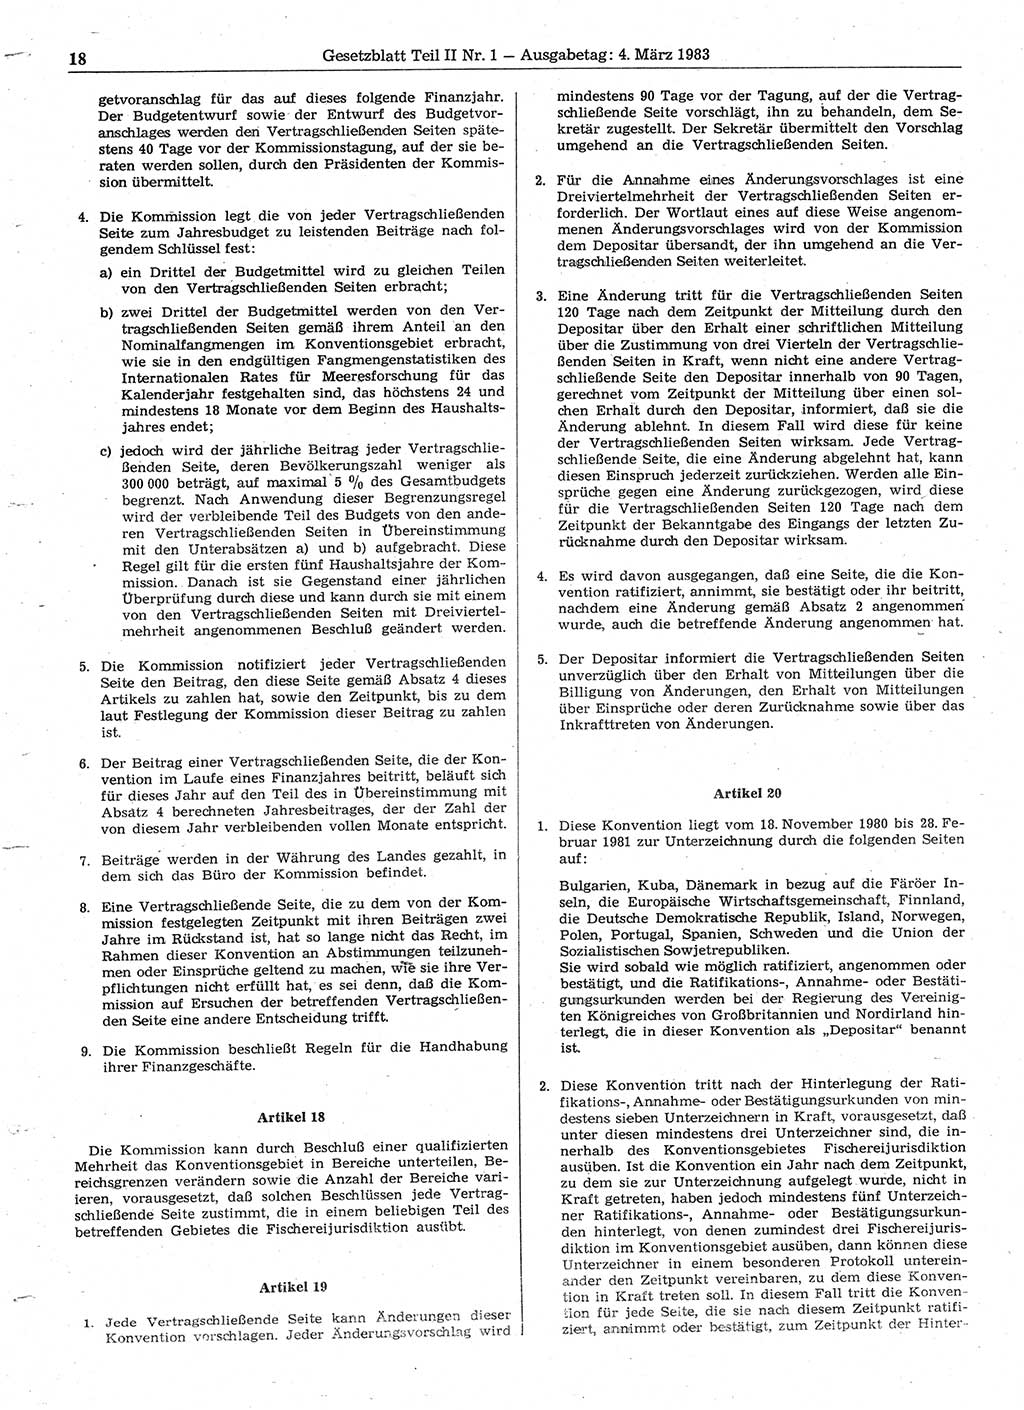 Gesetzblatt (GBl.) der Deutschen Demokratischen Republik (DDR) Teil ⅠⅠ 1983, Seite 18 (GBl. DDR ⅠⅠ 1983, S. 18)